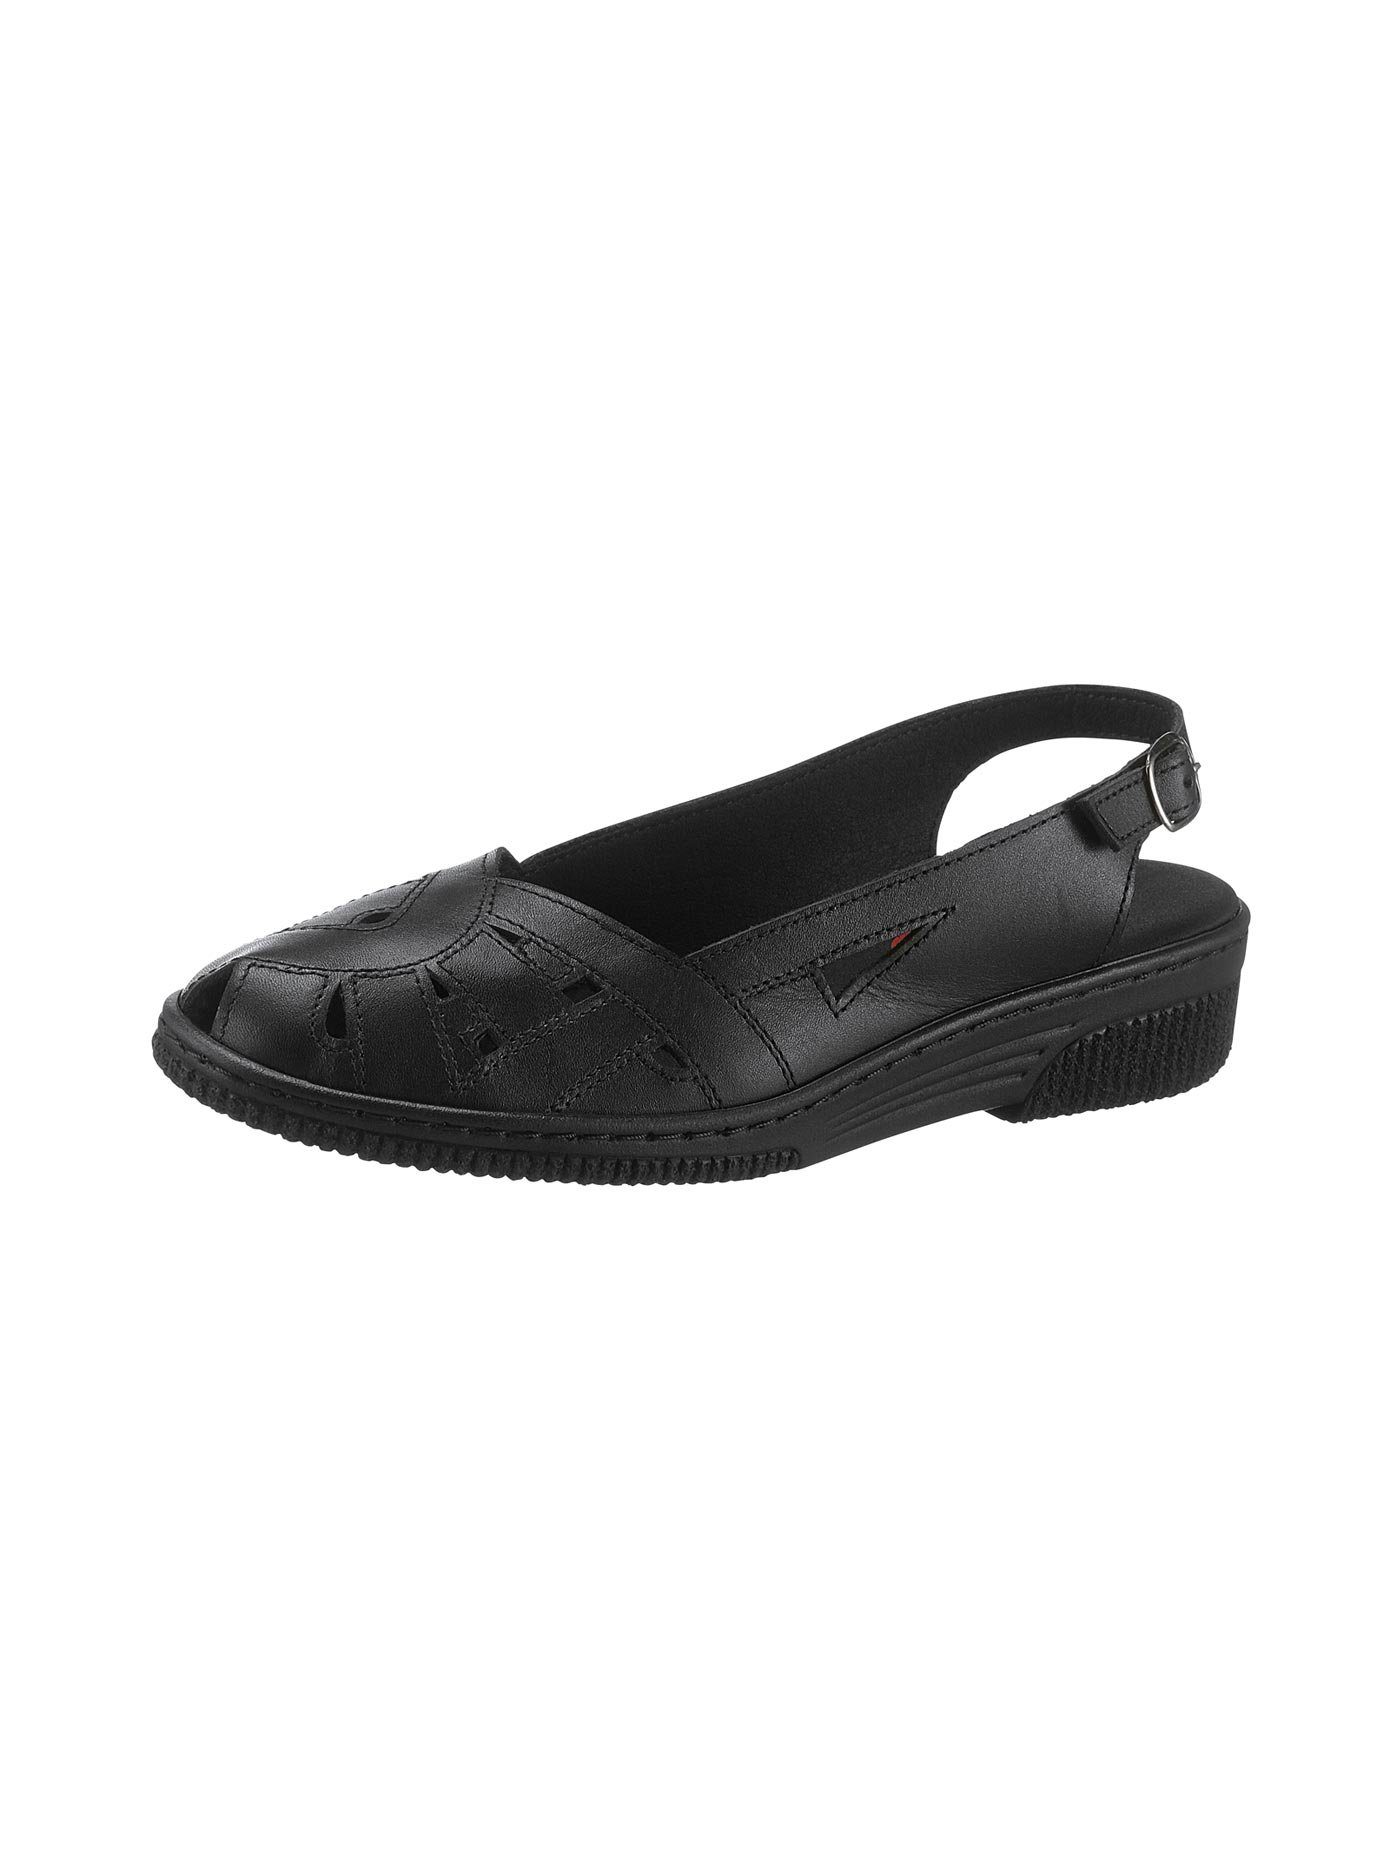 Kiarflex Sandalette online kaufen | OTTO